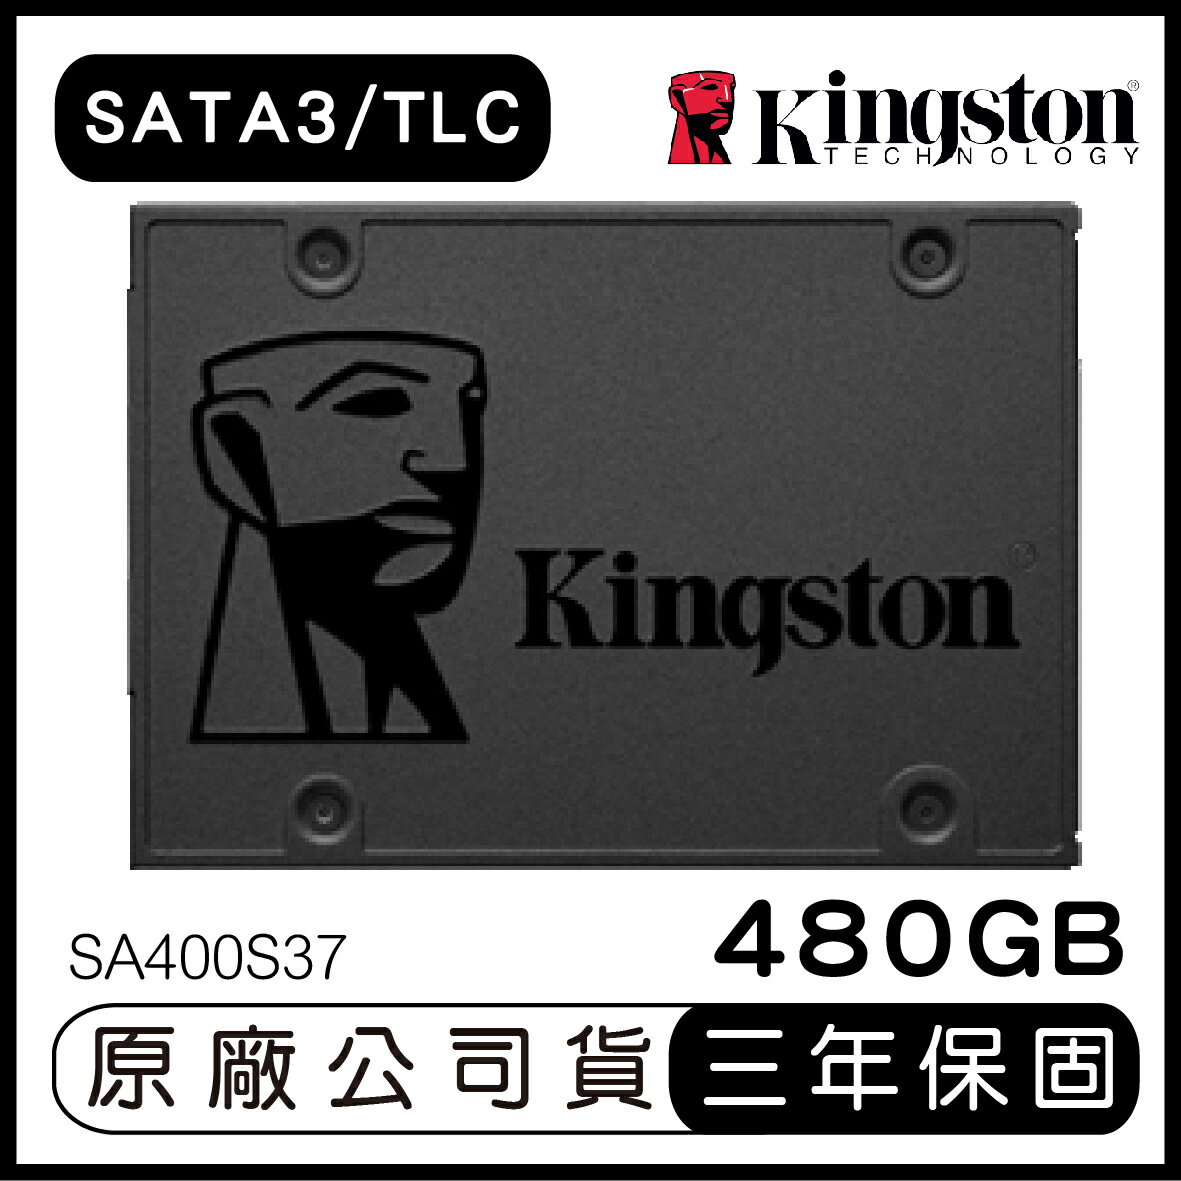 【9%點數】KINGSTON 金士頓 SSDNow A400 480GB 2.5吋 SATA3 固態硬碟 SA400S37 SSD【APP下單9%點數回饋】【限定樂天APP下單】